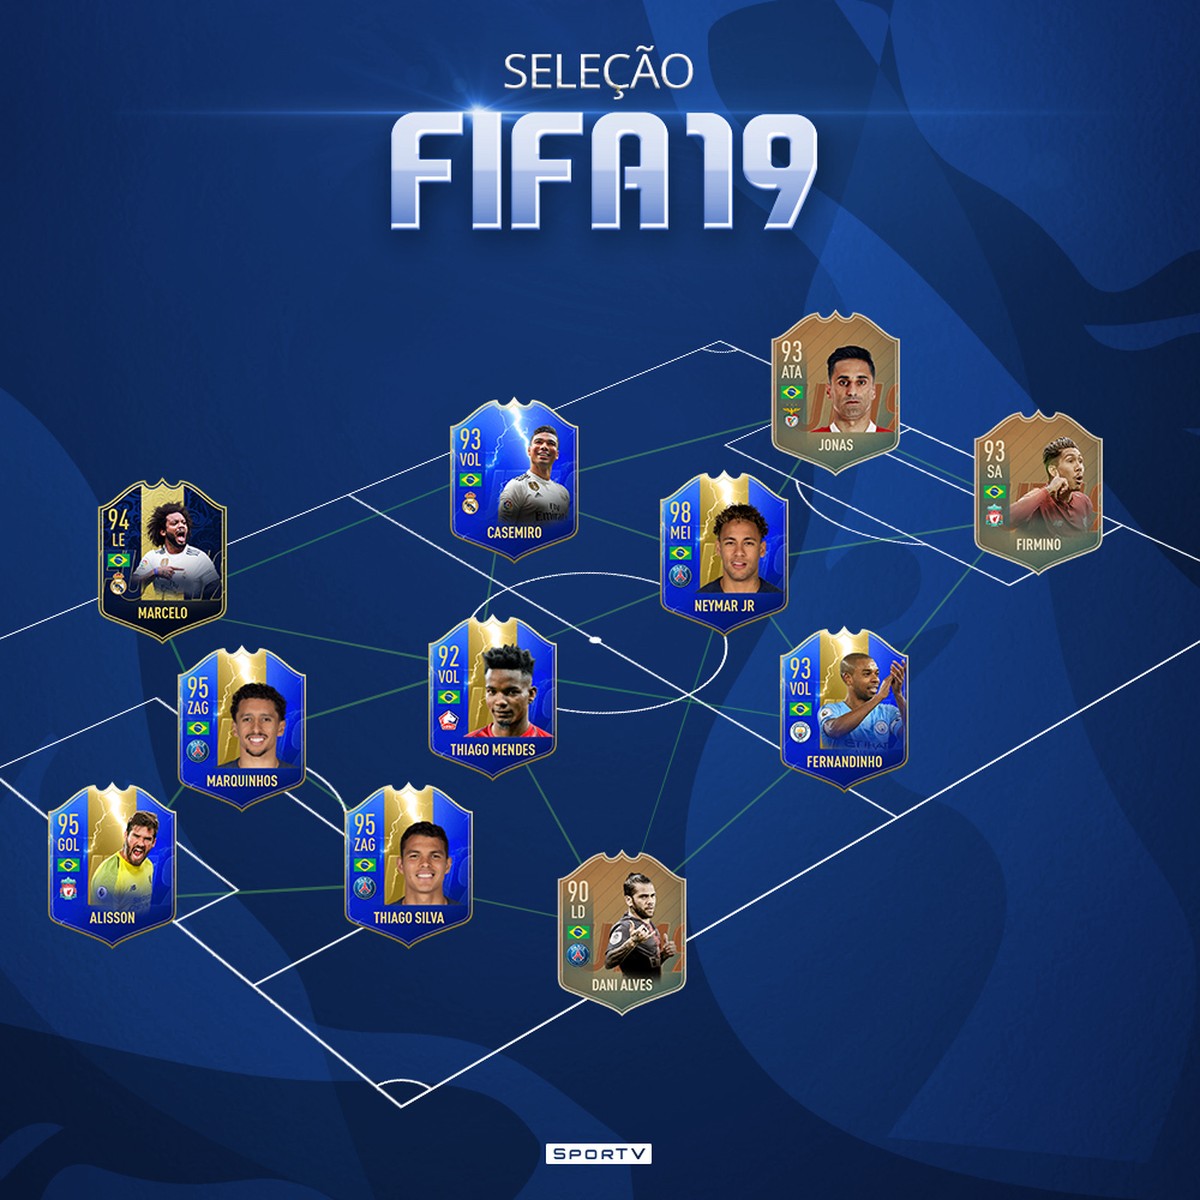 FIFA 19 traz apenas 15 times brasileiros e com jogadores genéricos